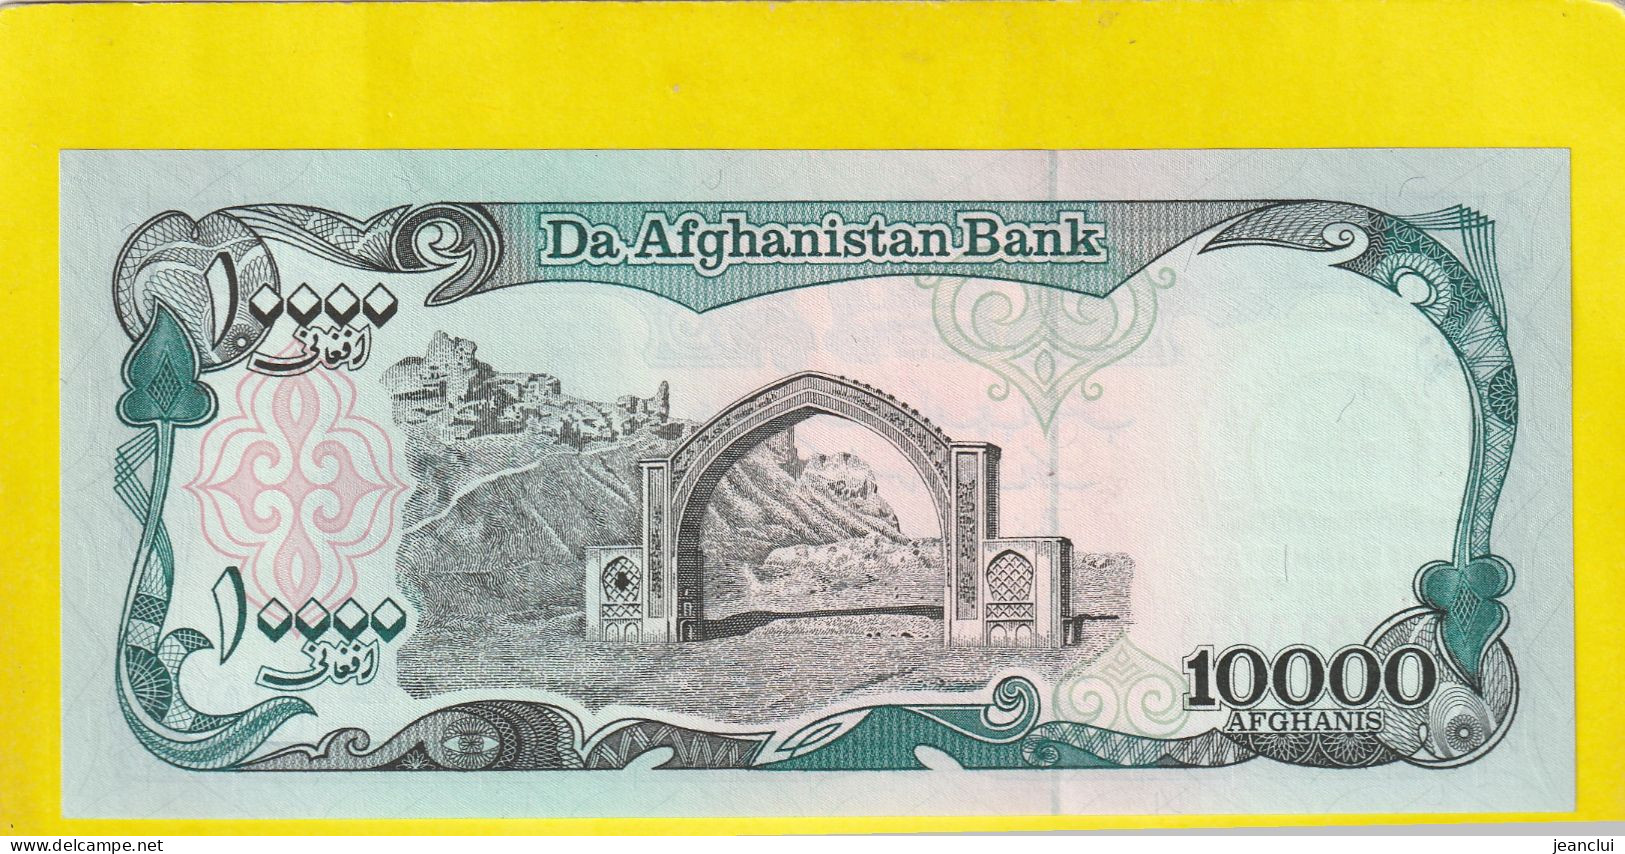 DA AFGHANISTAN BANK  .  10.000 AFGHANIS  .  2 SCANNES  .  ETAT LUXE / UNC - Afghanistan